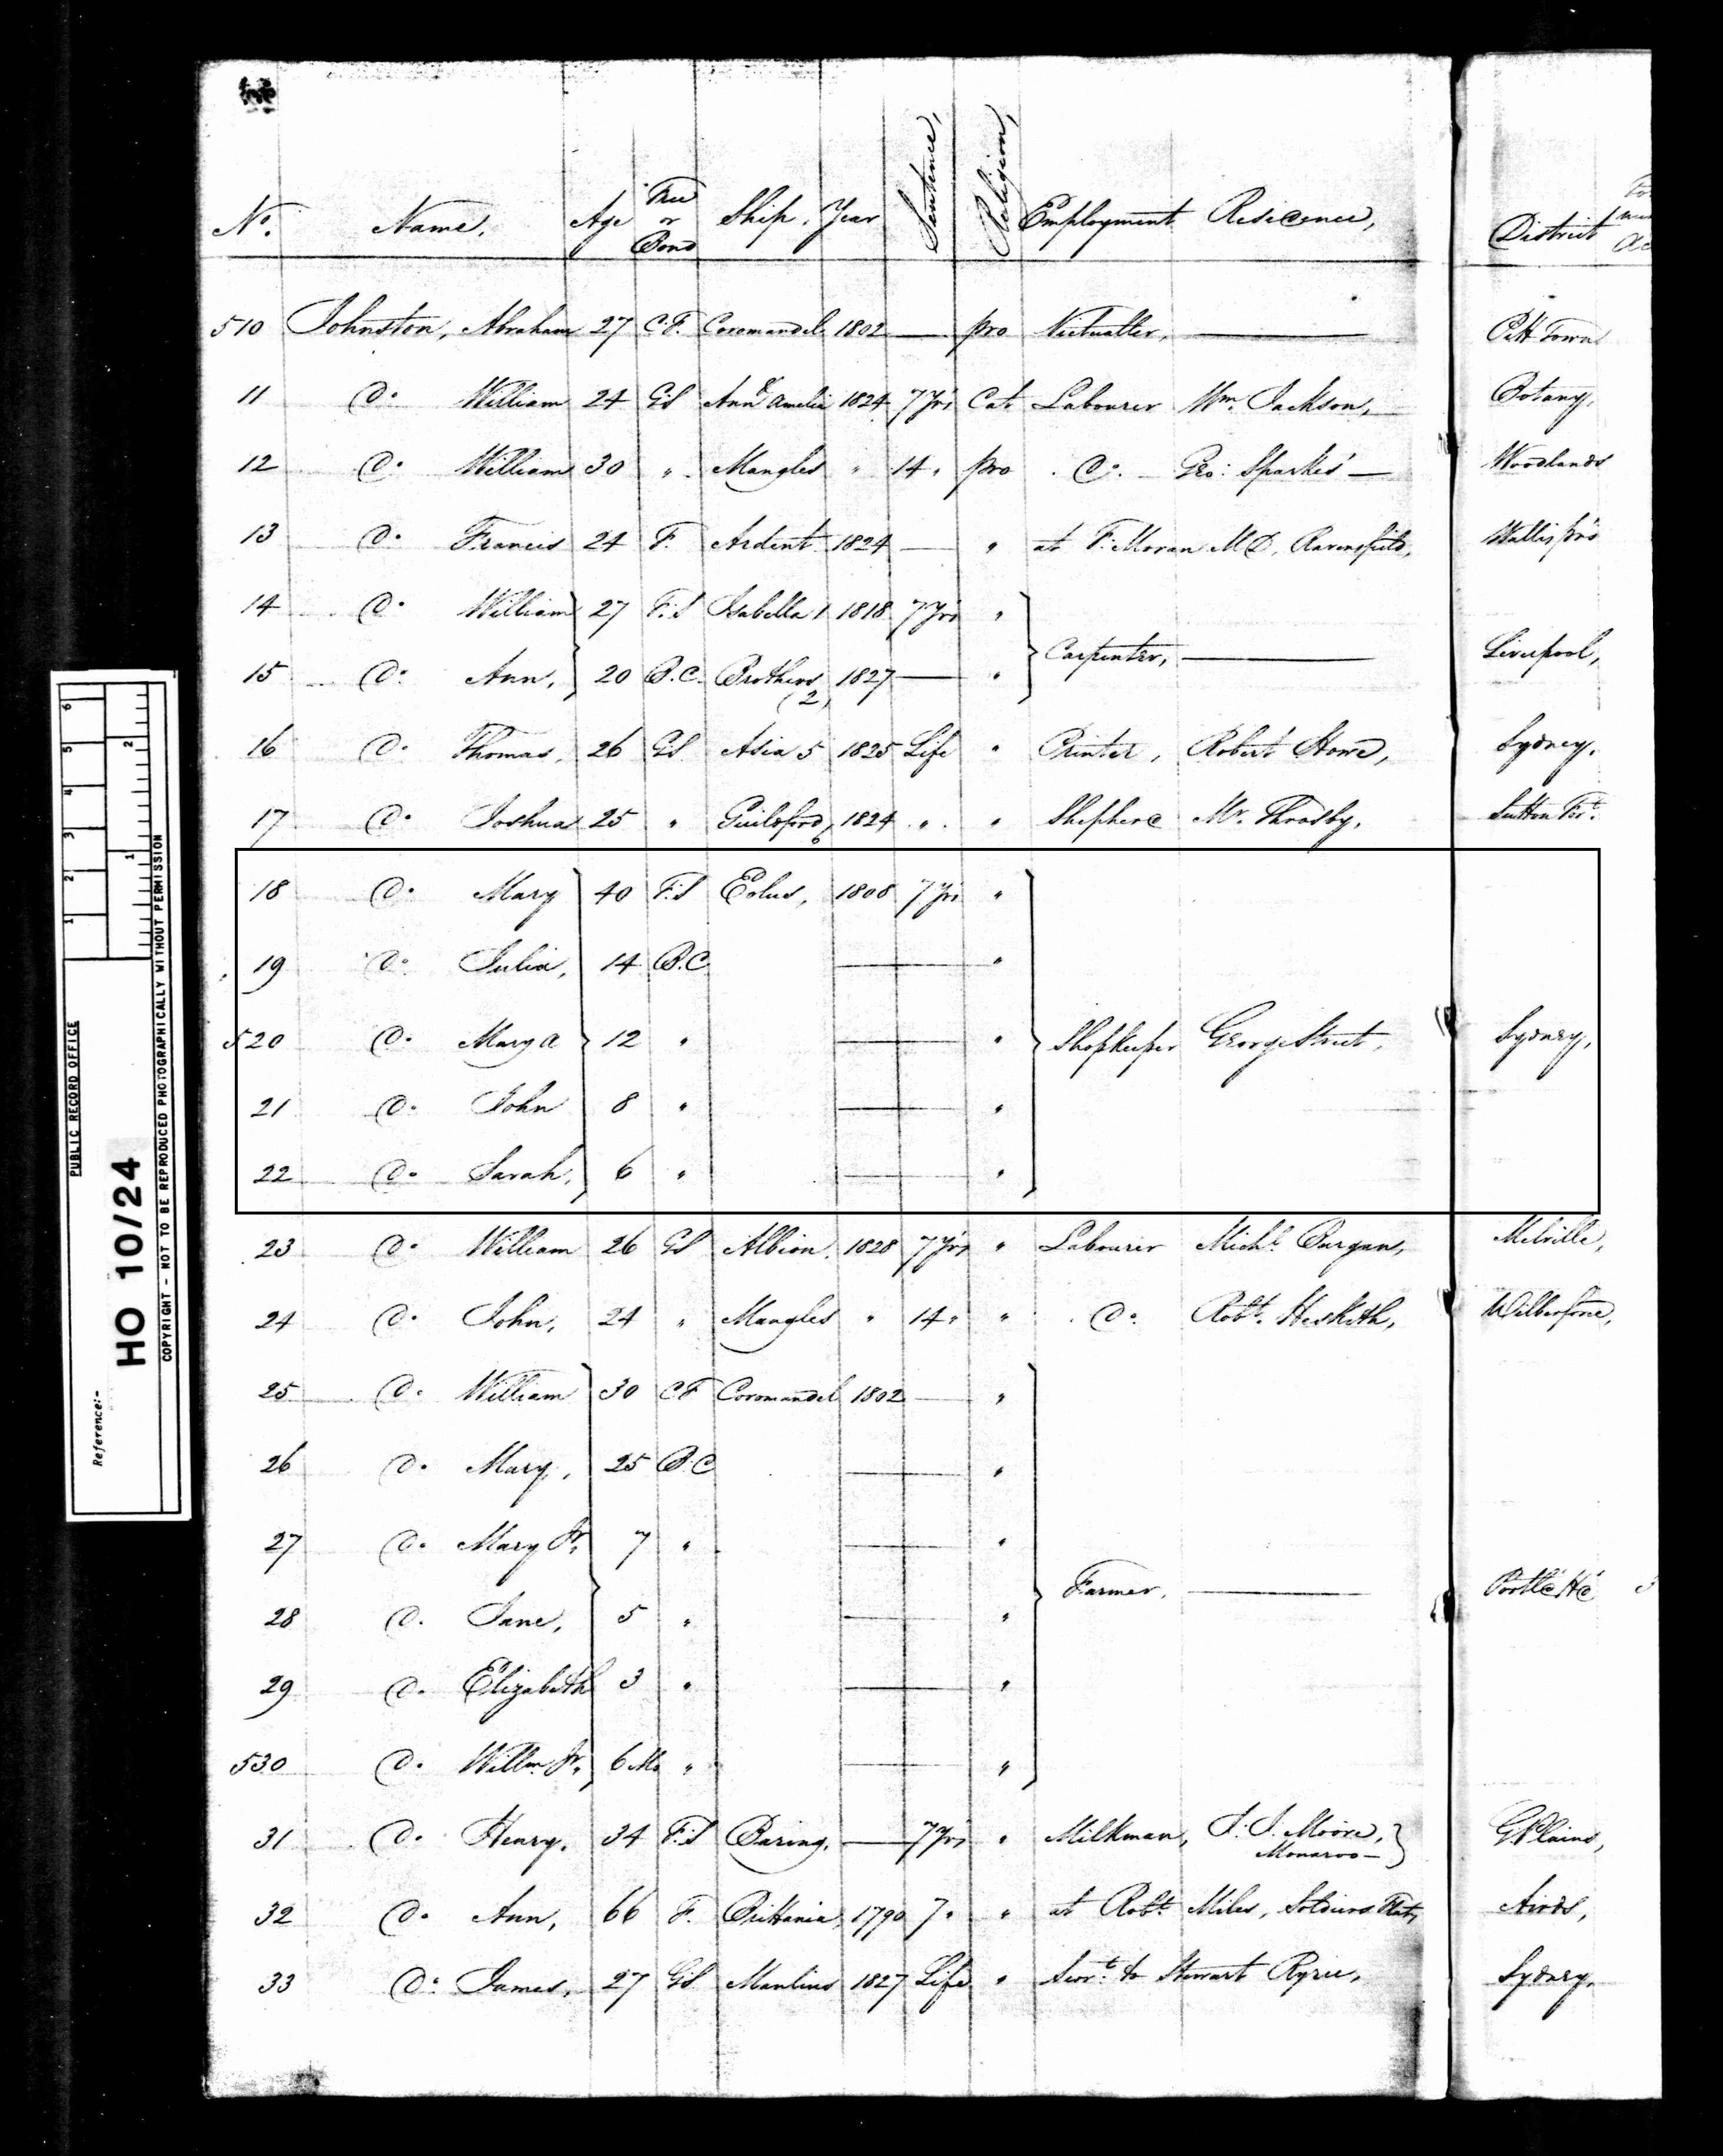 Mary Johnston 1828 census marked